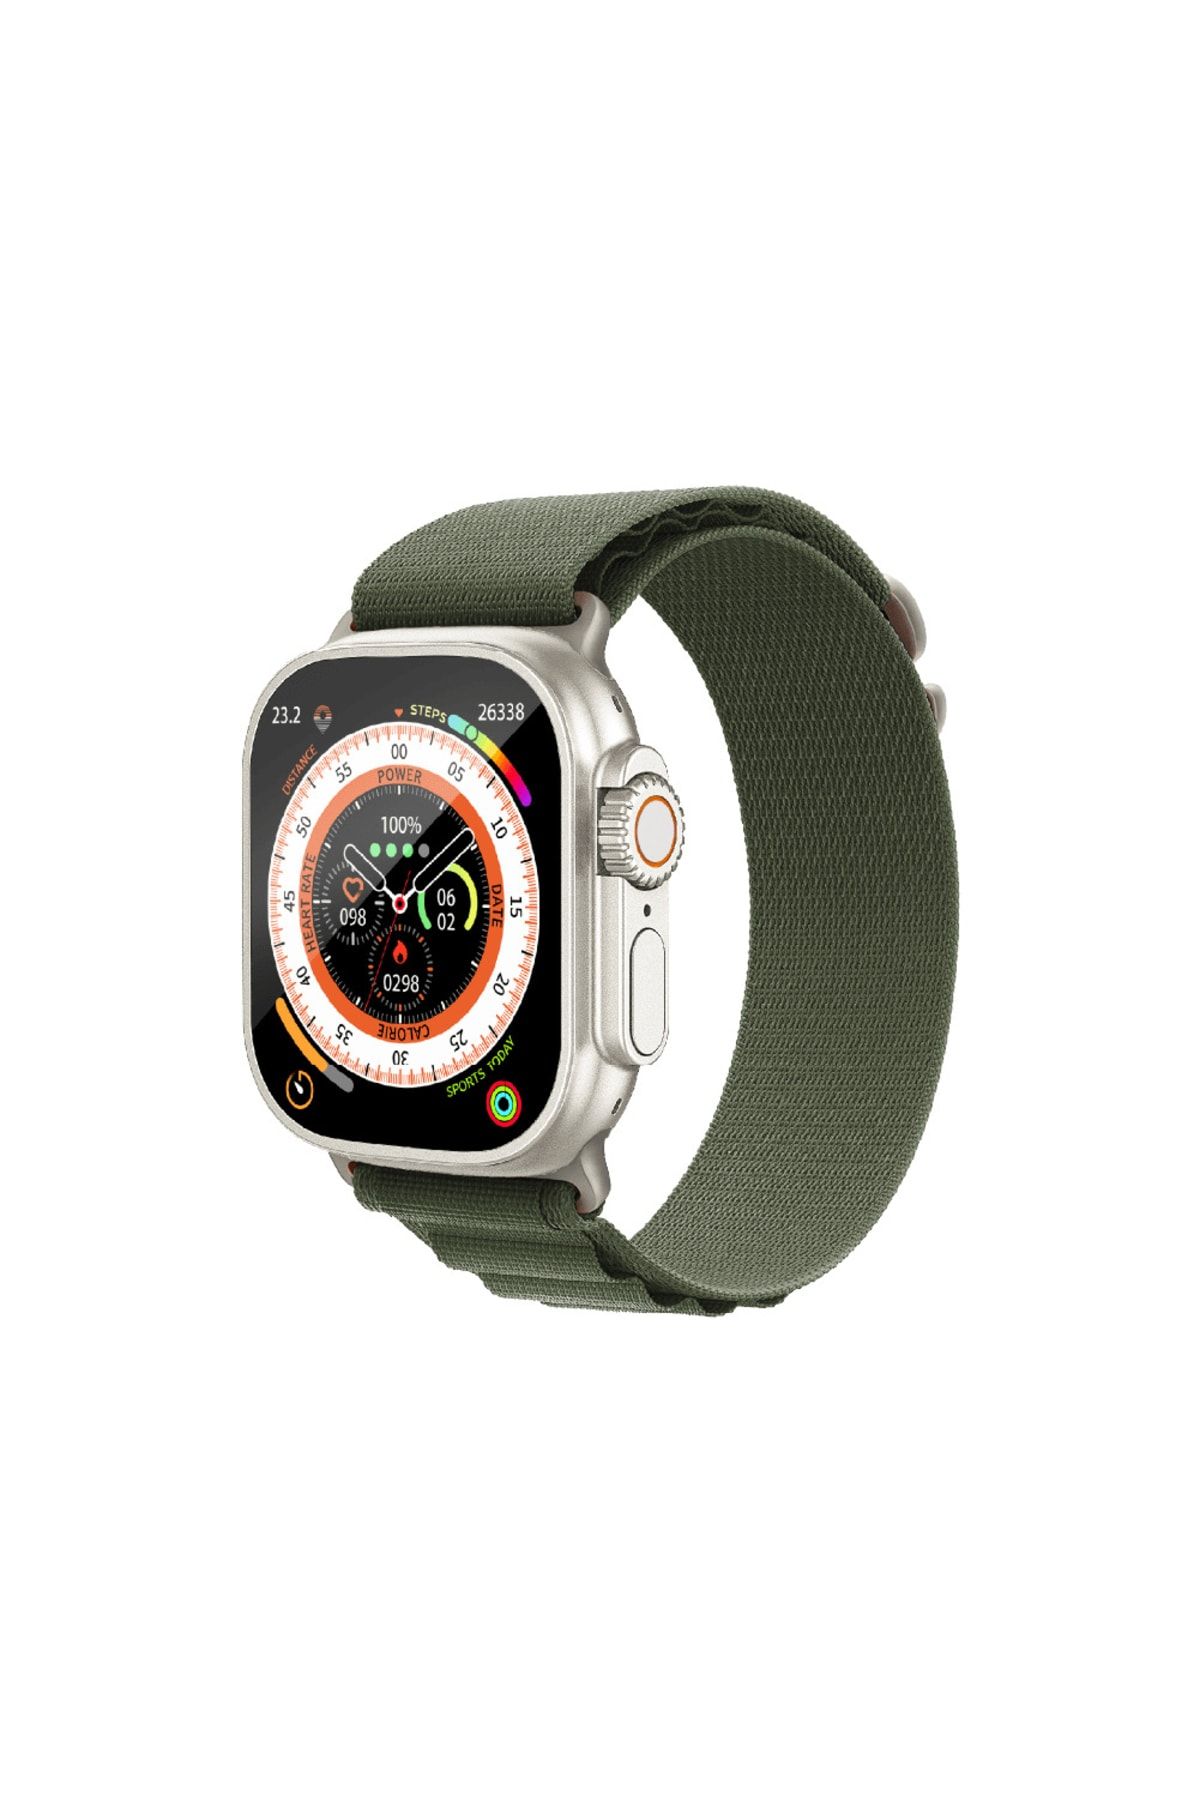 Link Watch S90 Premium Akıllı Saat Gps 49mm Alüminyum Kasa Hd Ekran Ios Ve Android Uyumlu